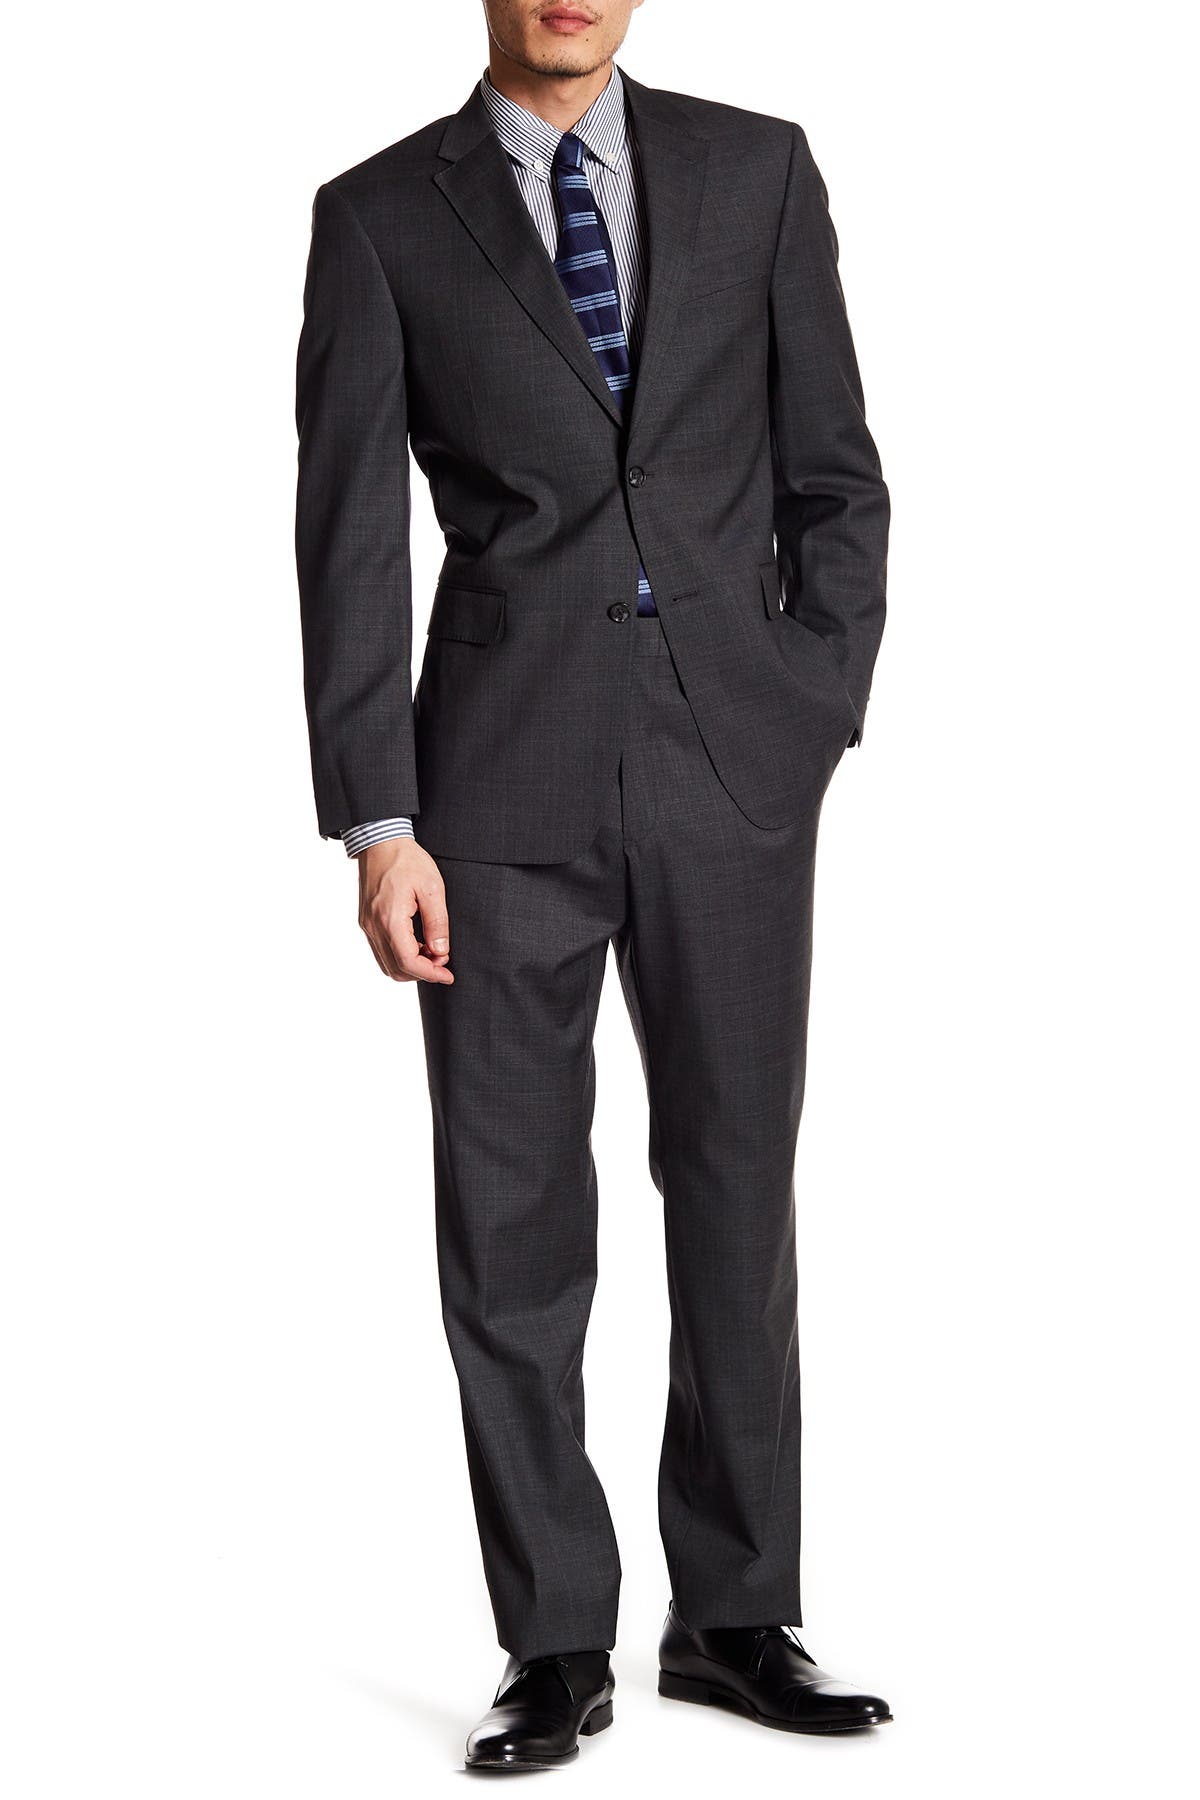 tommy hilfiger charcoal suit